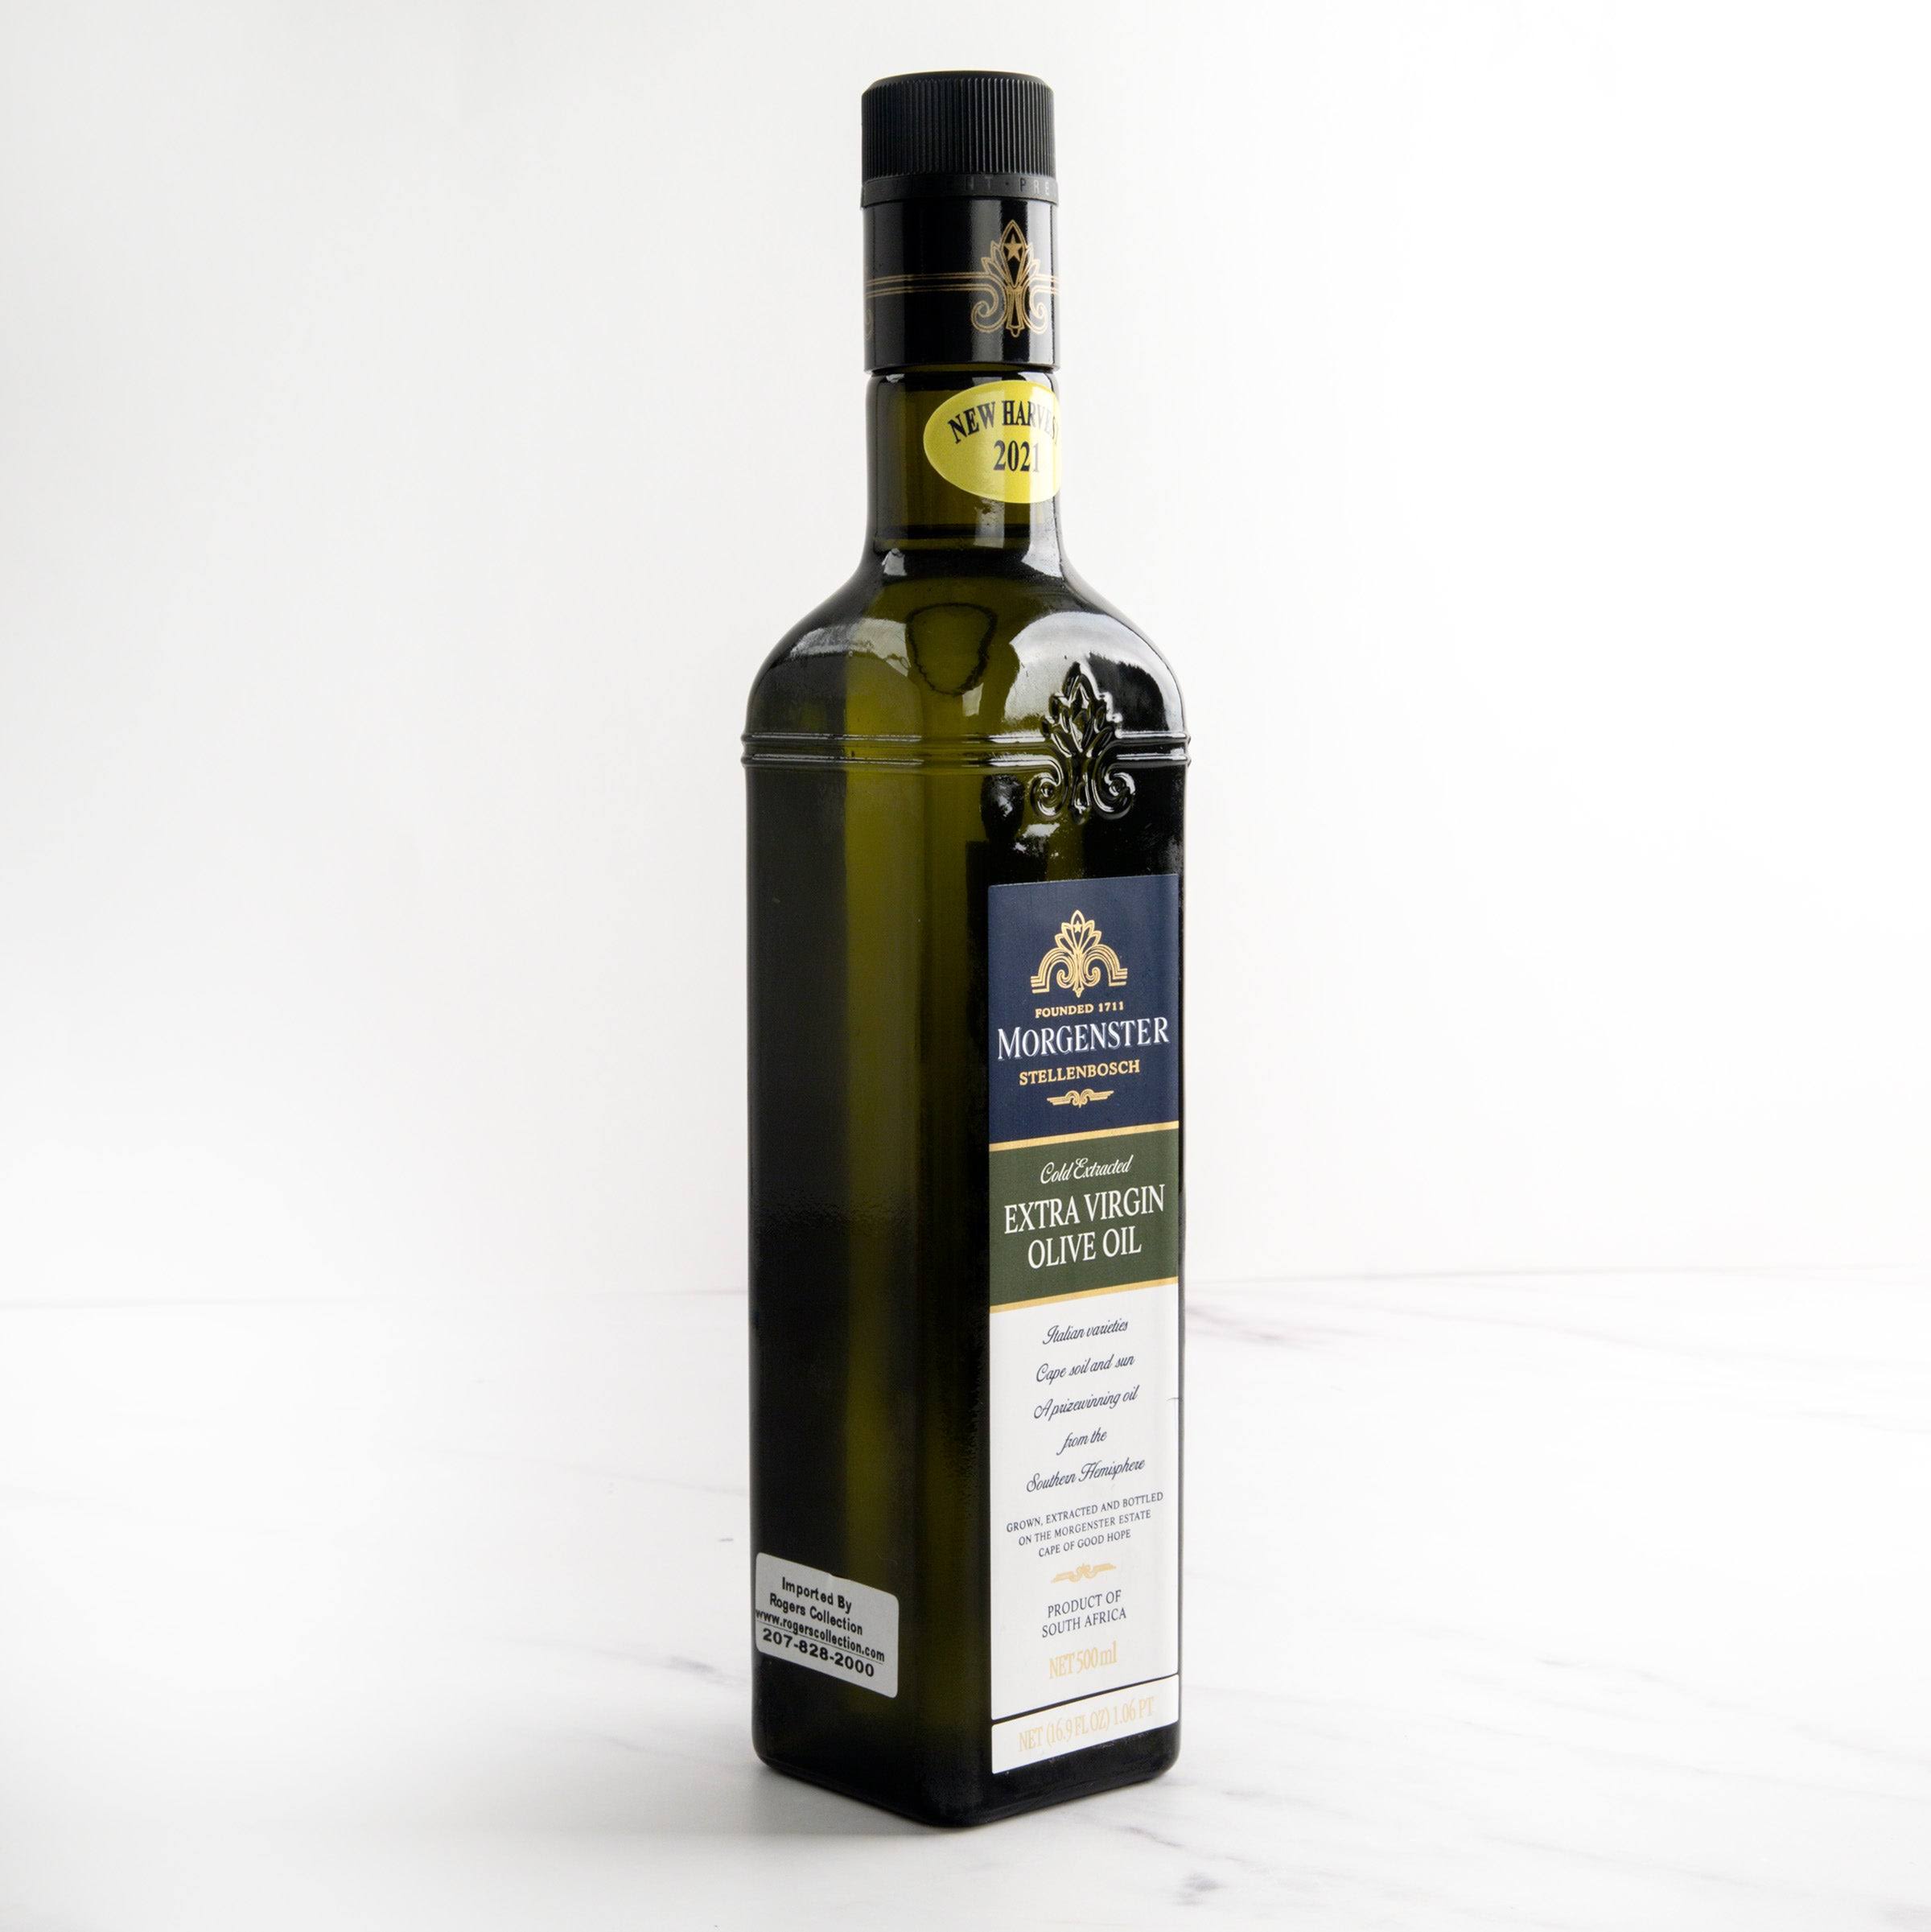 Morgenster Extra Virgin Olive Oil - 16.9 fl oz bottle